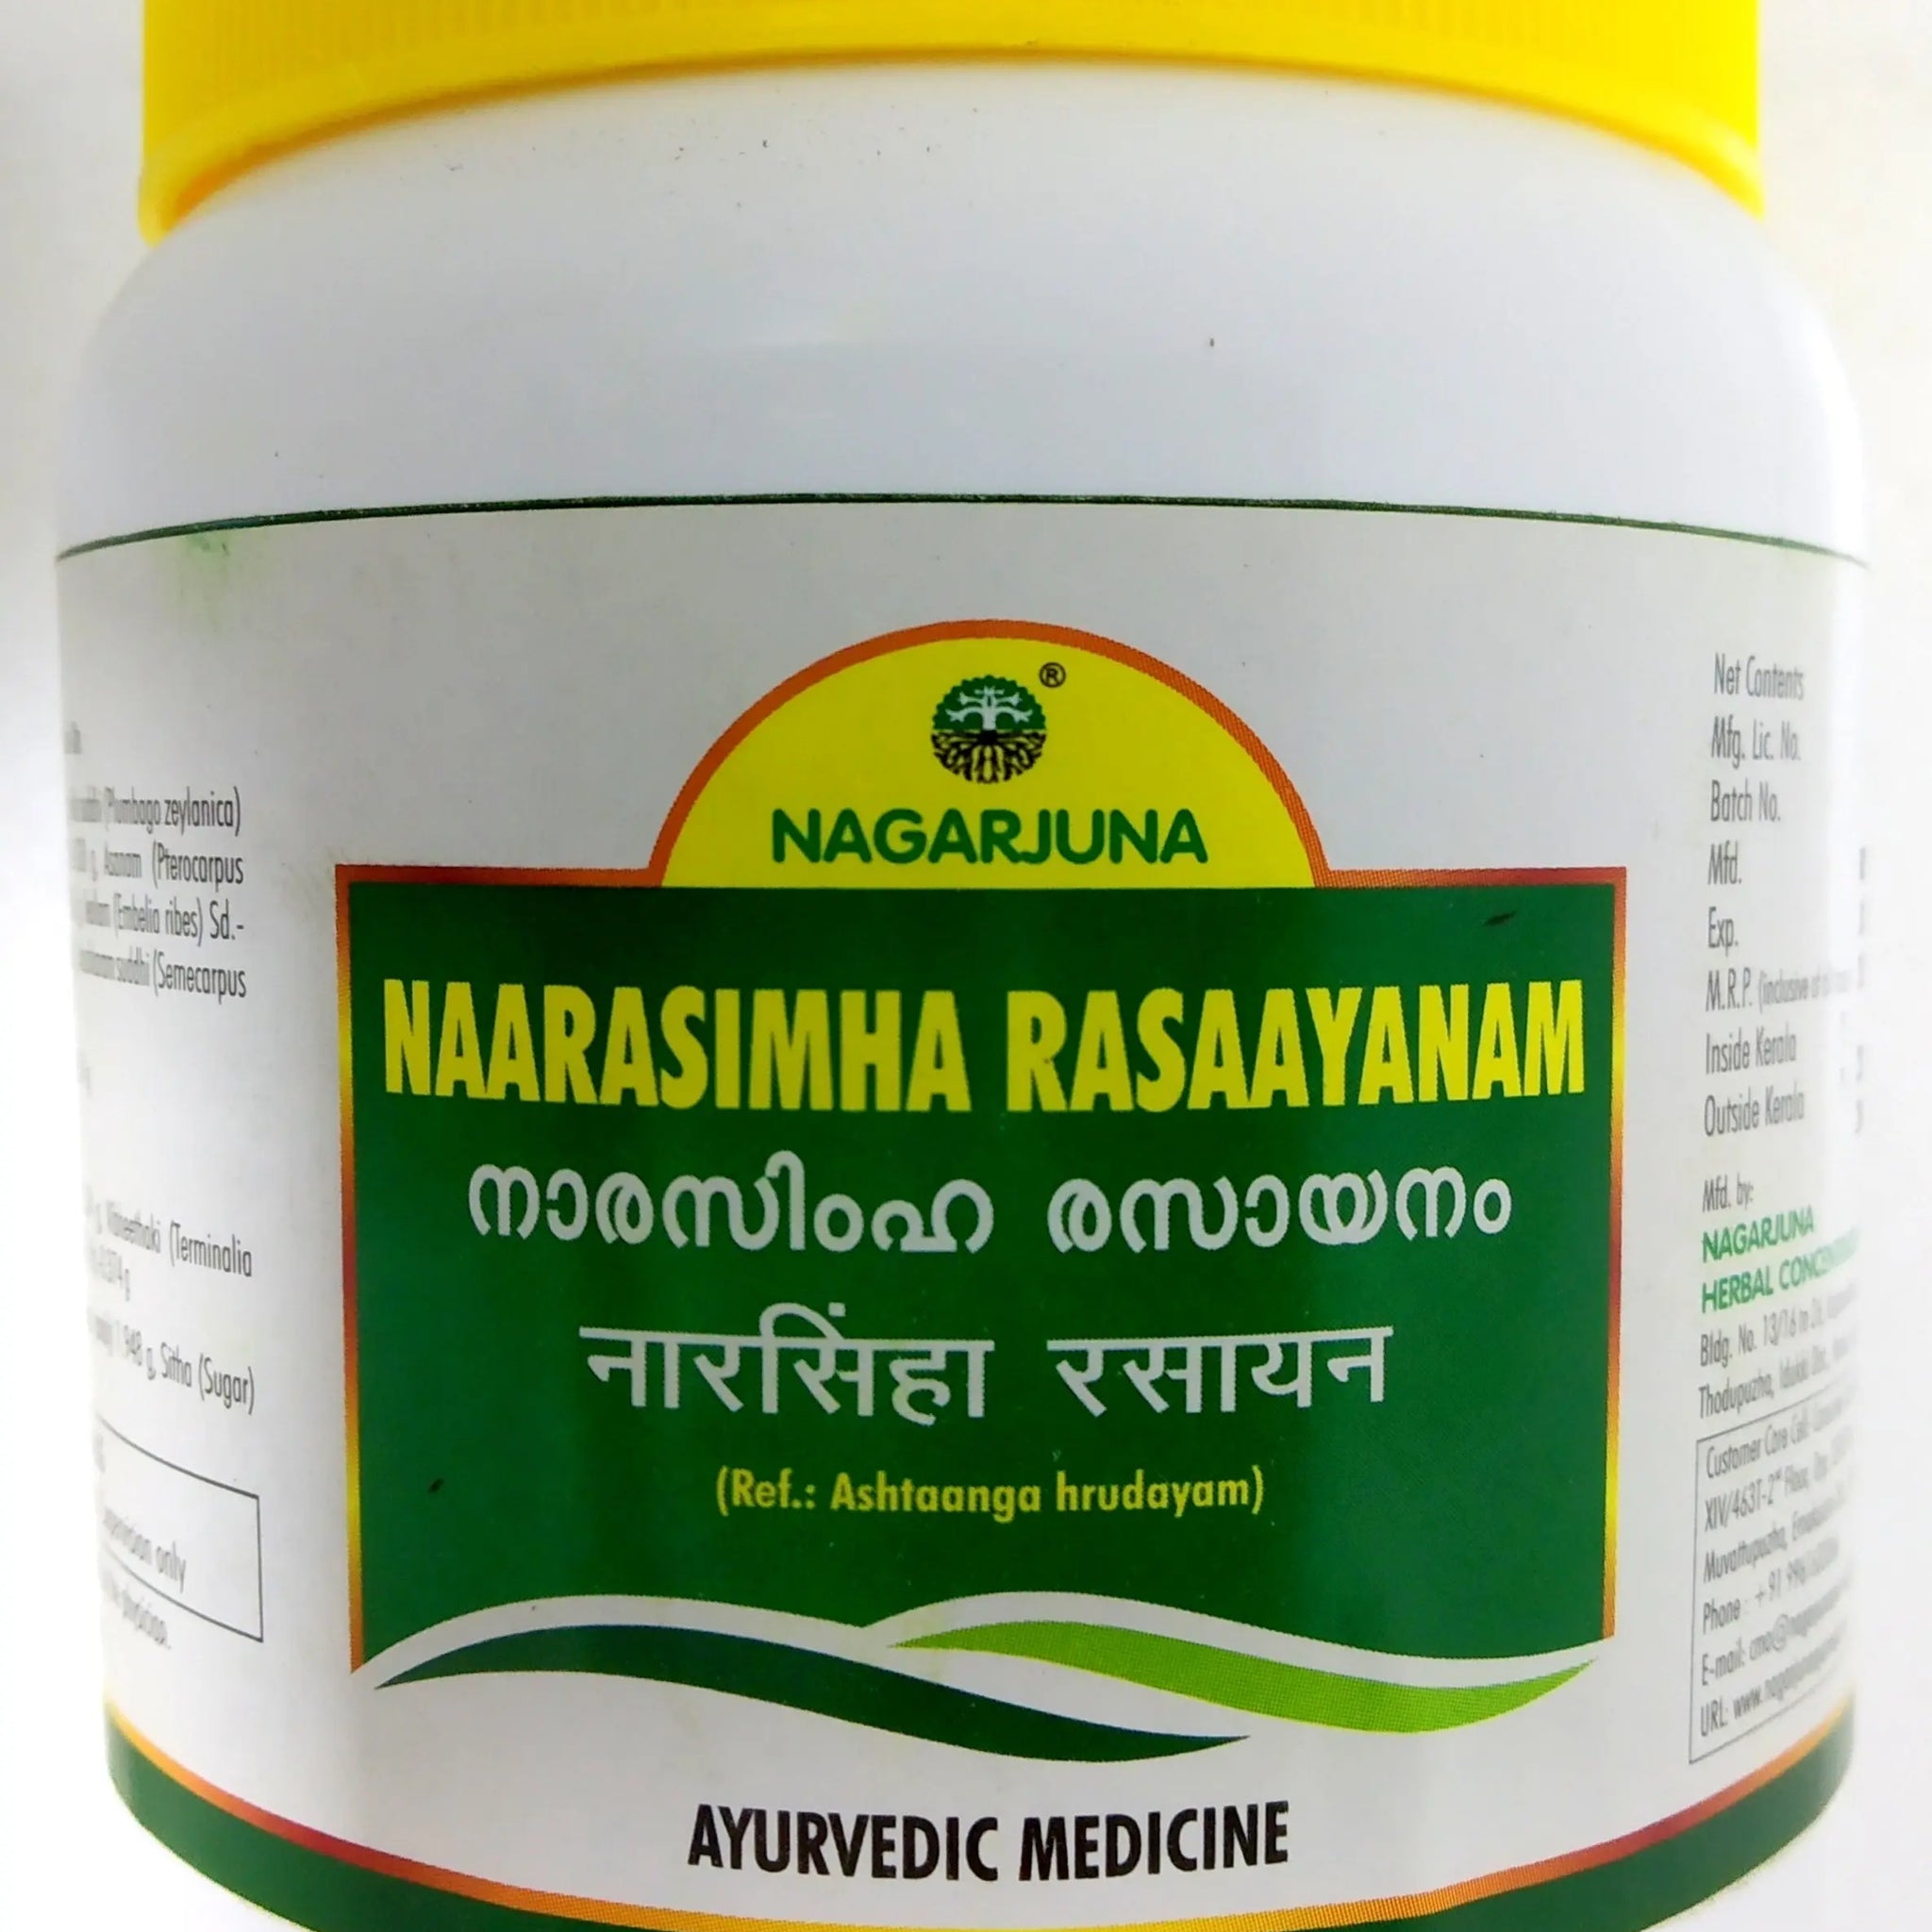 Nagarjuna Narasimha Rasayanam 400g Nagarjuna